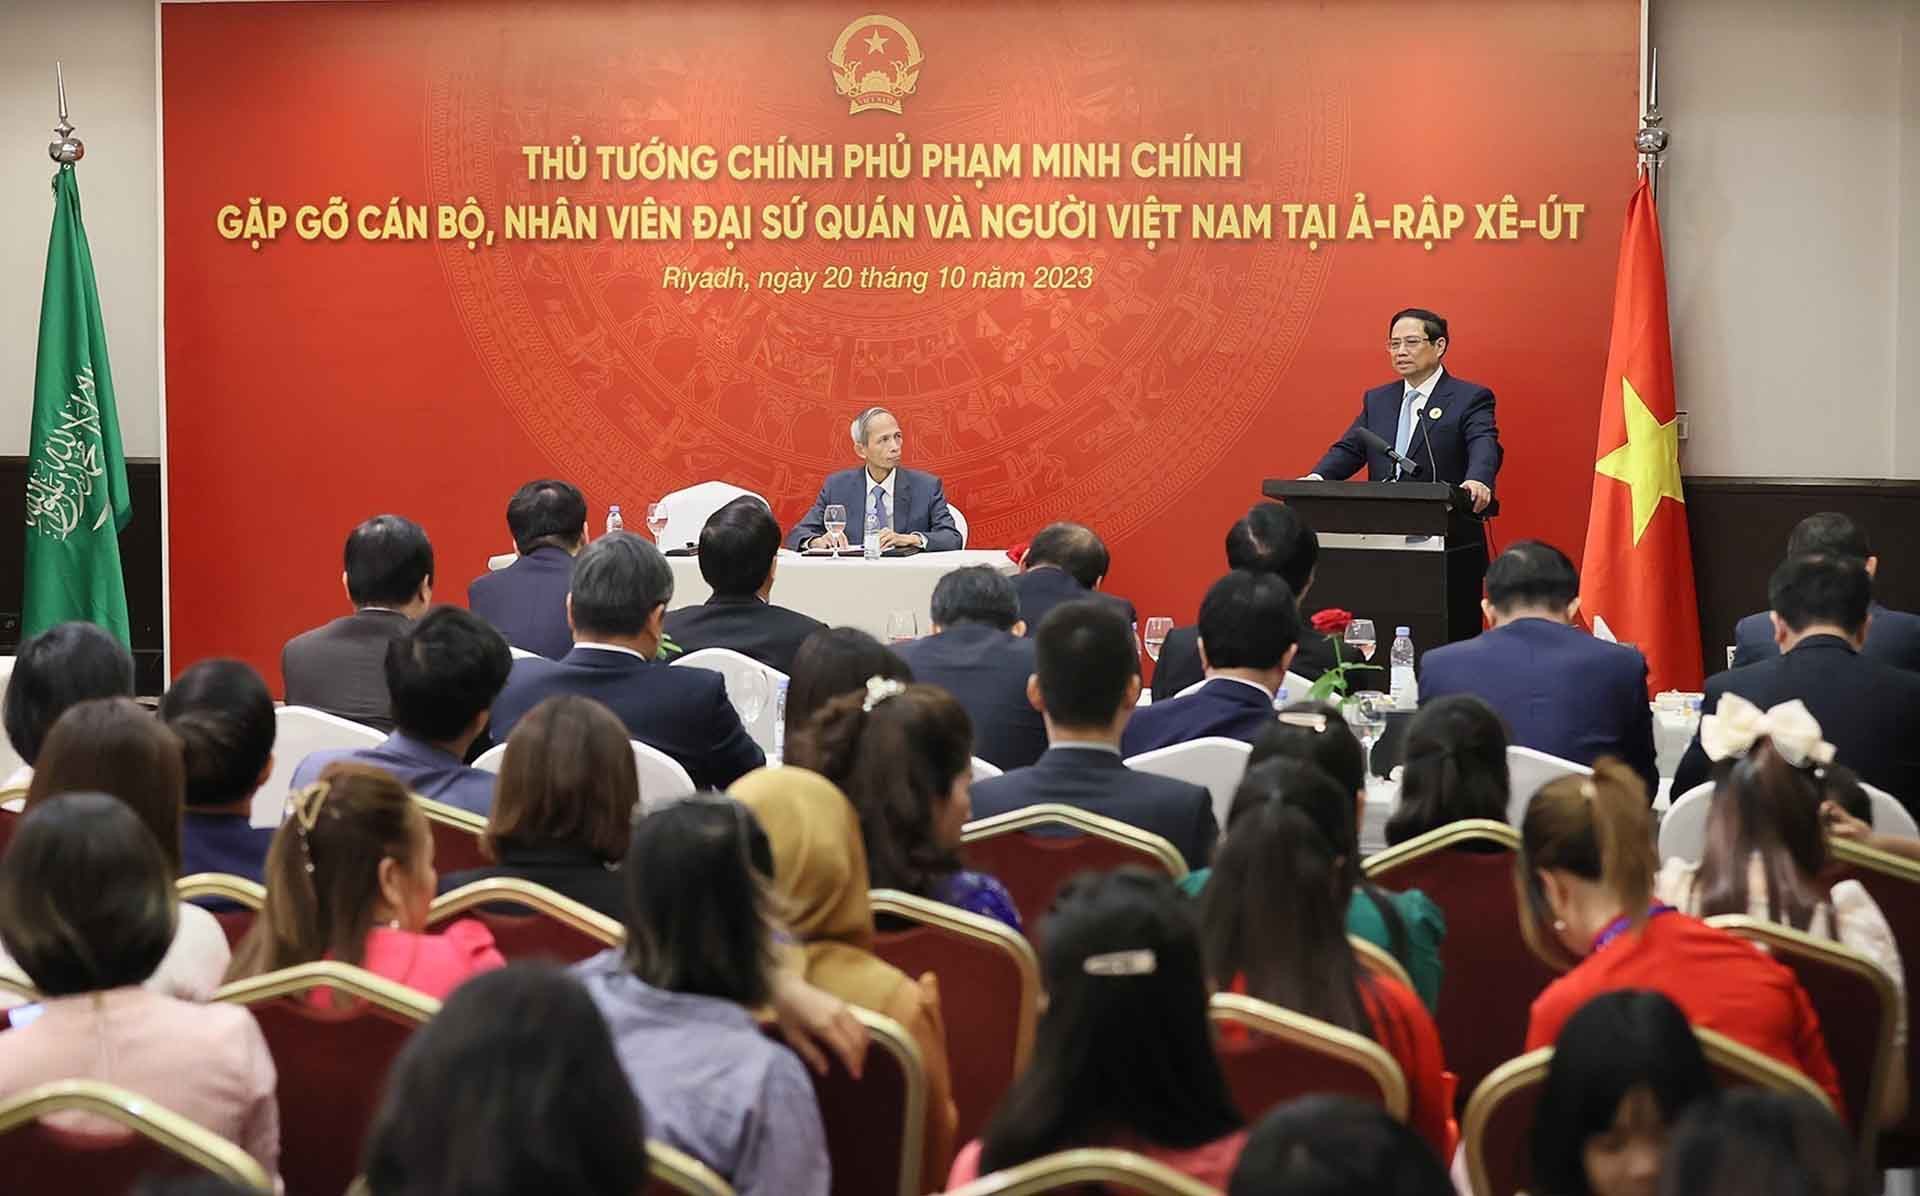 Thủ tướng gặp gỡ cán bộ, nhân viên Đại sứ quán và đại diện cộng đồng người Việt Nam tại Saudi Arabia